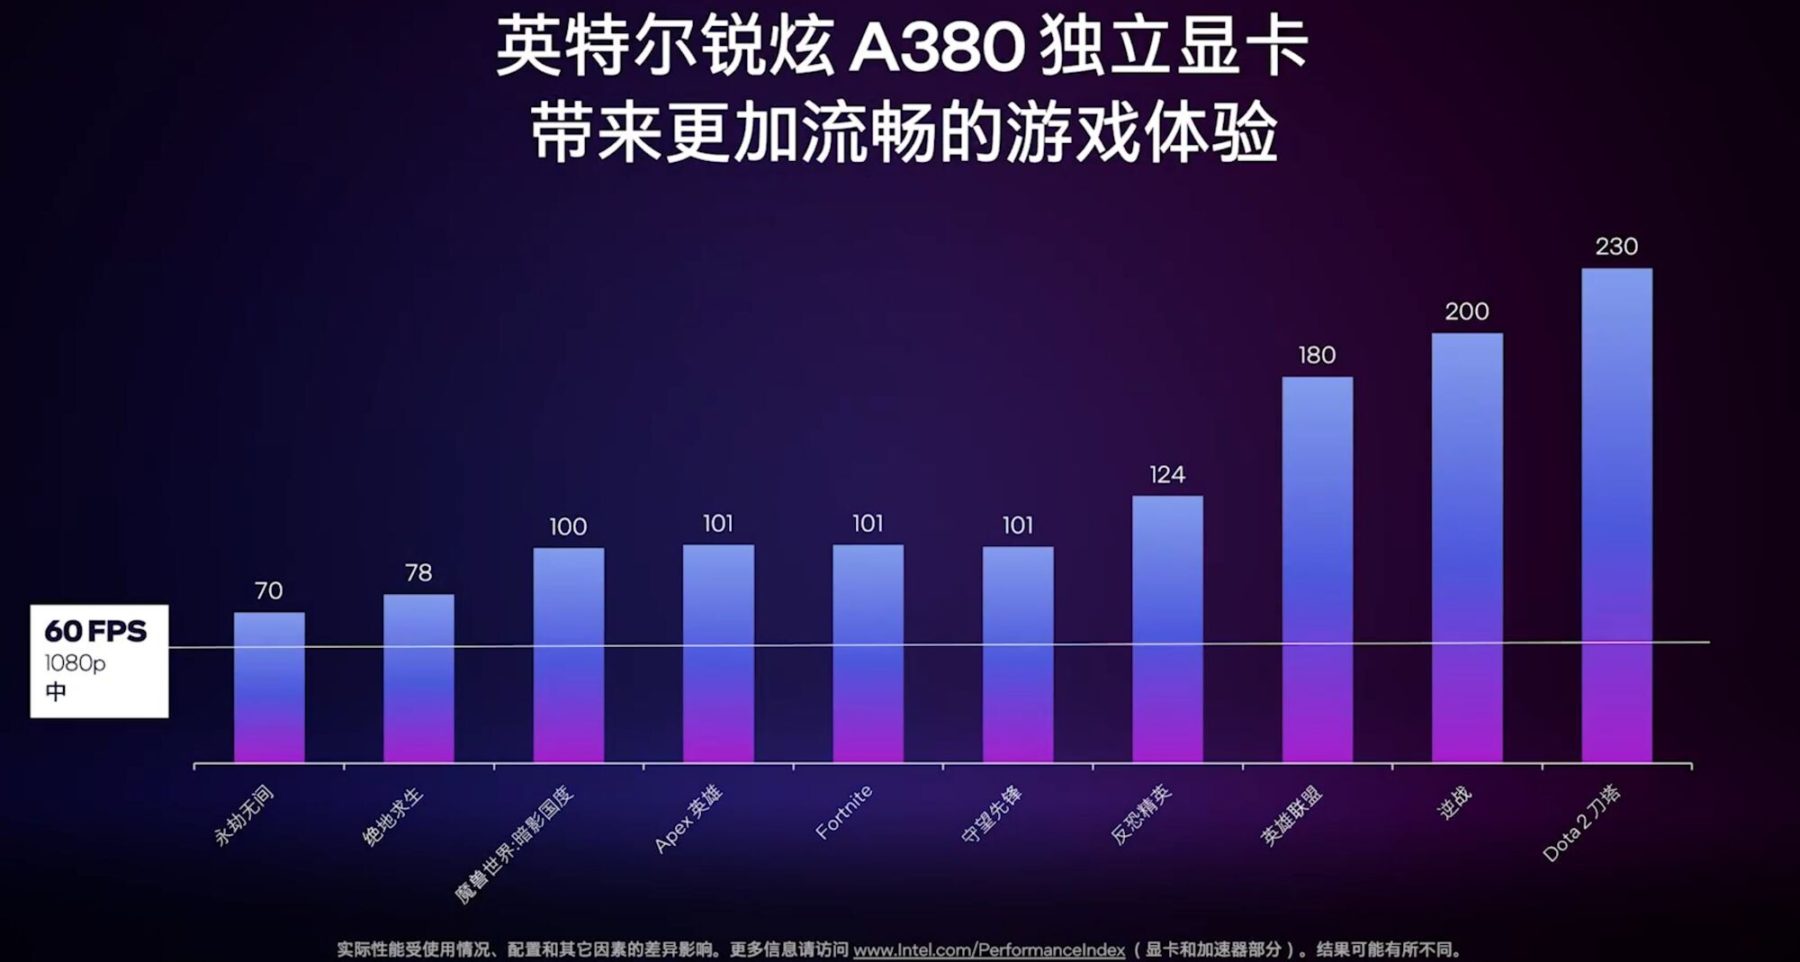 Intel Releases Arc A380 GPU in China -